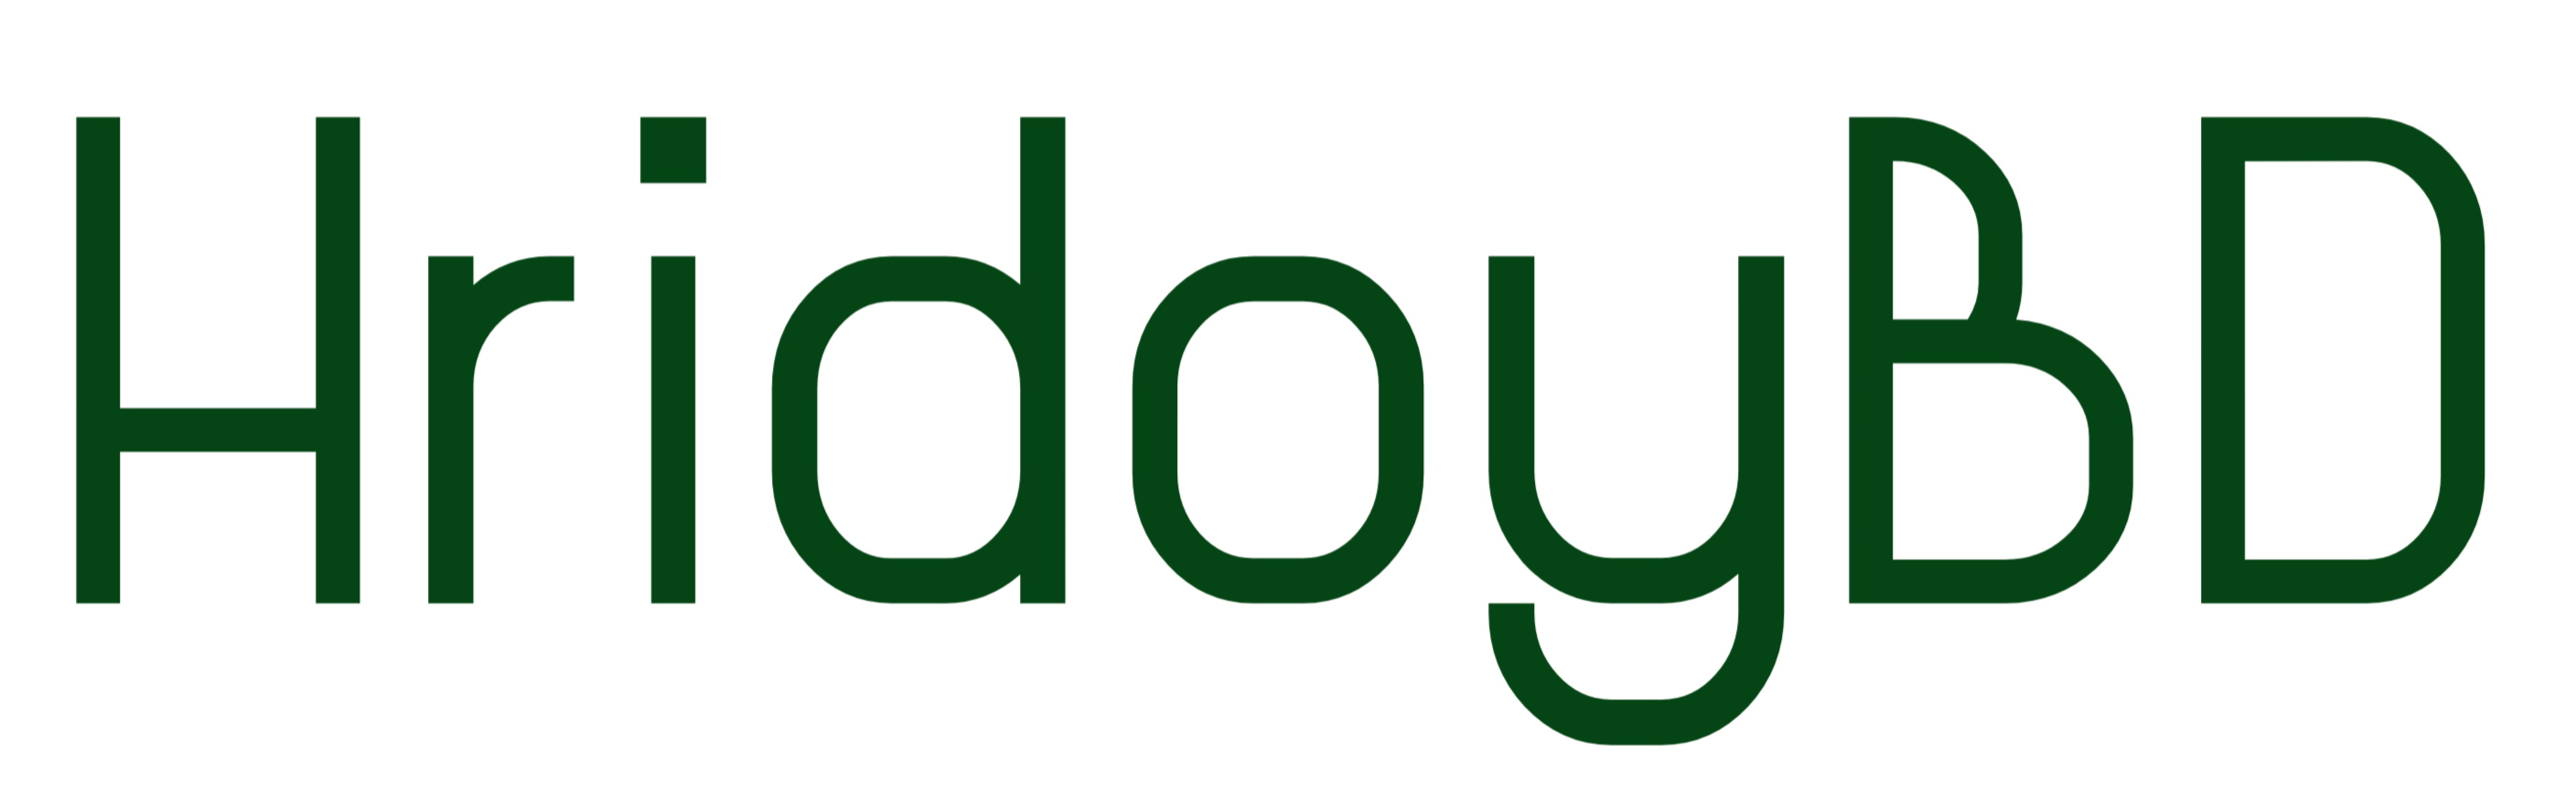 HridoyBD Logo